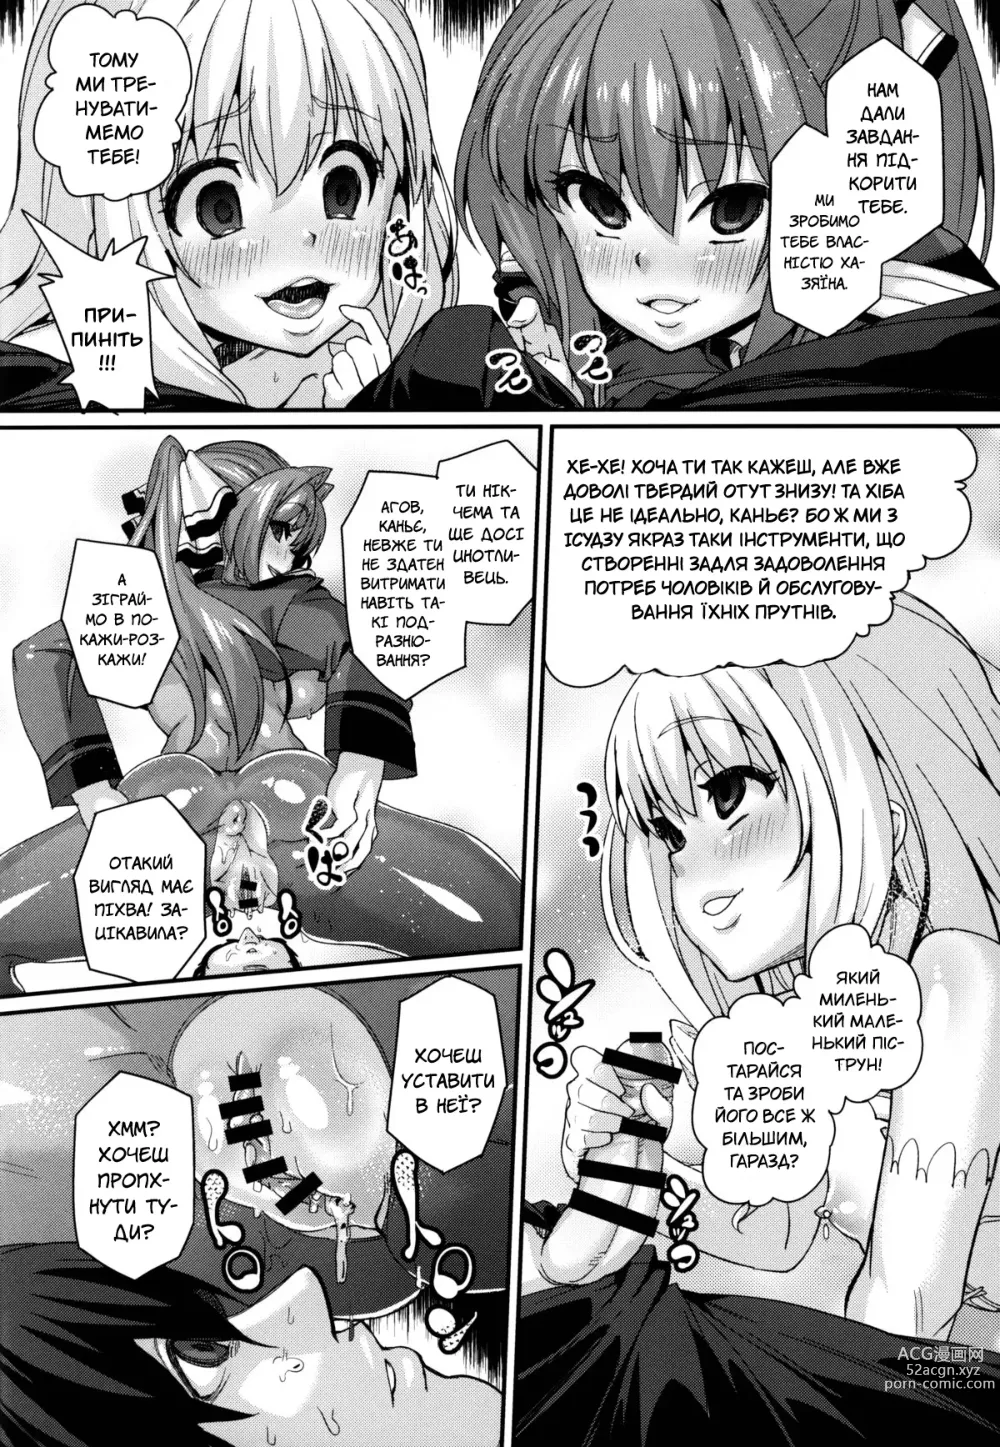 Page 20 of doujinshi Прощавай, розкішний парче Амаґі!